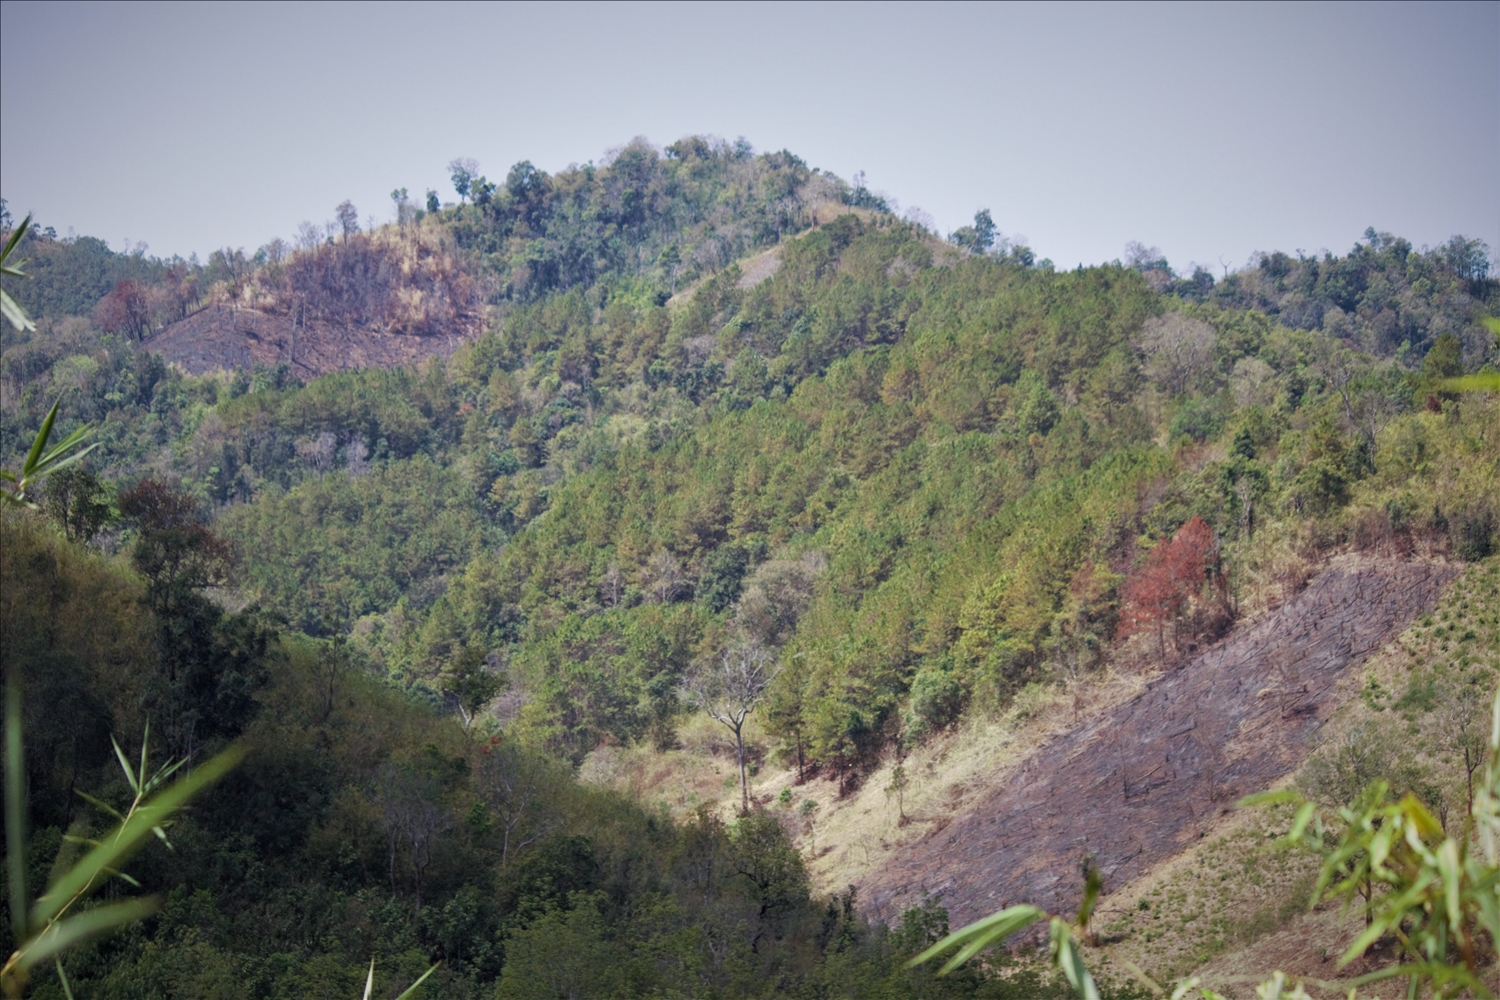 Xã Đăk Pxi là nơi có đông đồng bào DTTS sinh sống, nếu như không có sự vào cuộc quyết liệt của chính quyền địa phương, ngành chức năng thì tình trạng phát, đốt rừng làm nương rẫy sẽ tiếp tục diễn biến phức tạp